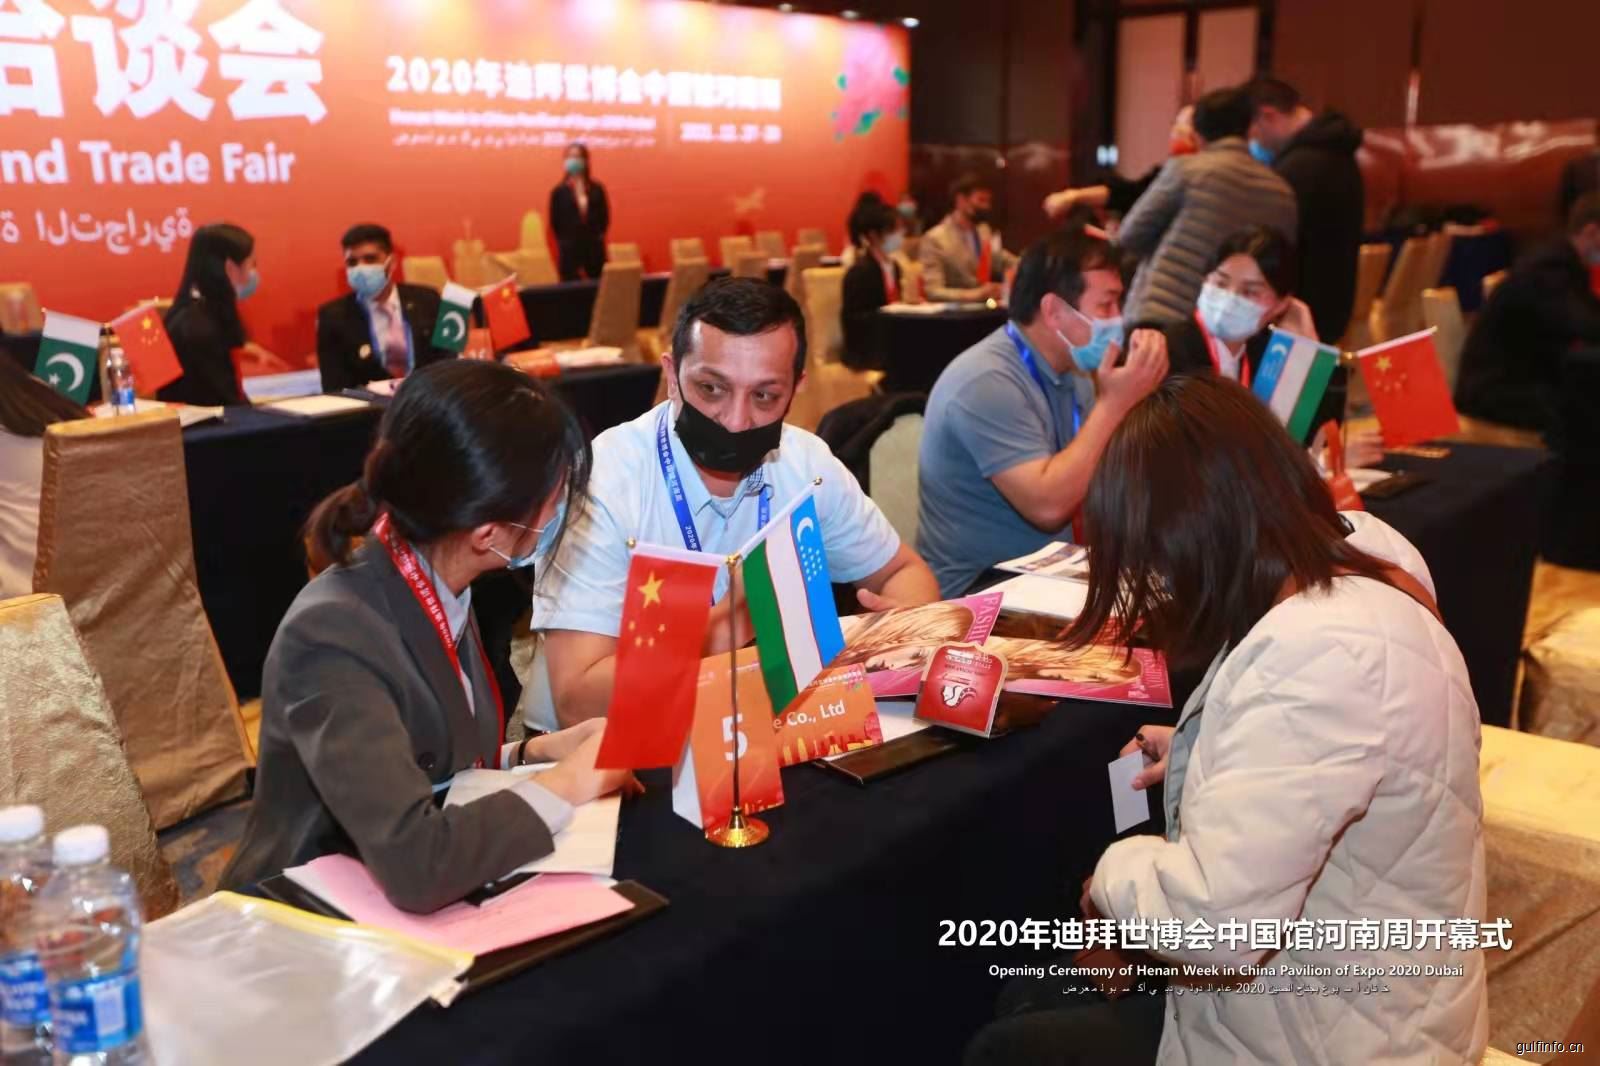 2020年迪拜世博会中国馆河南活动周启动